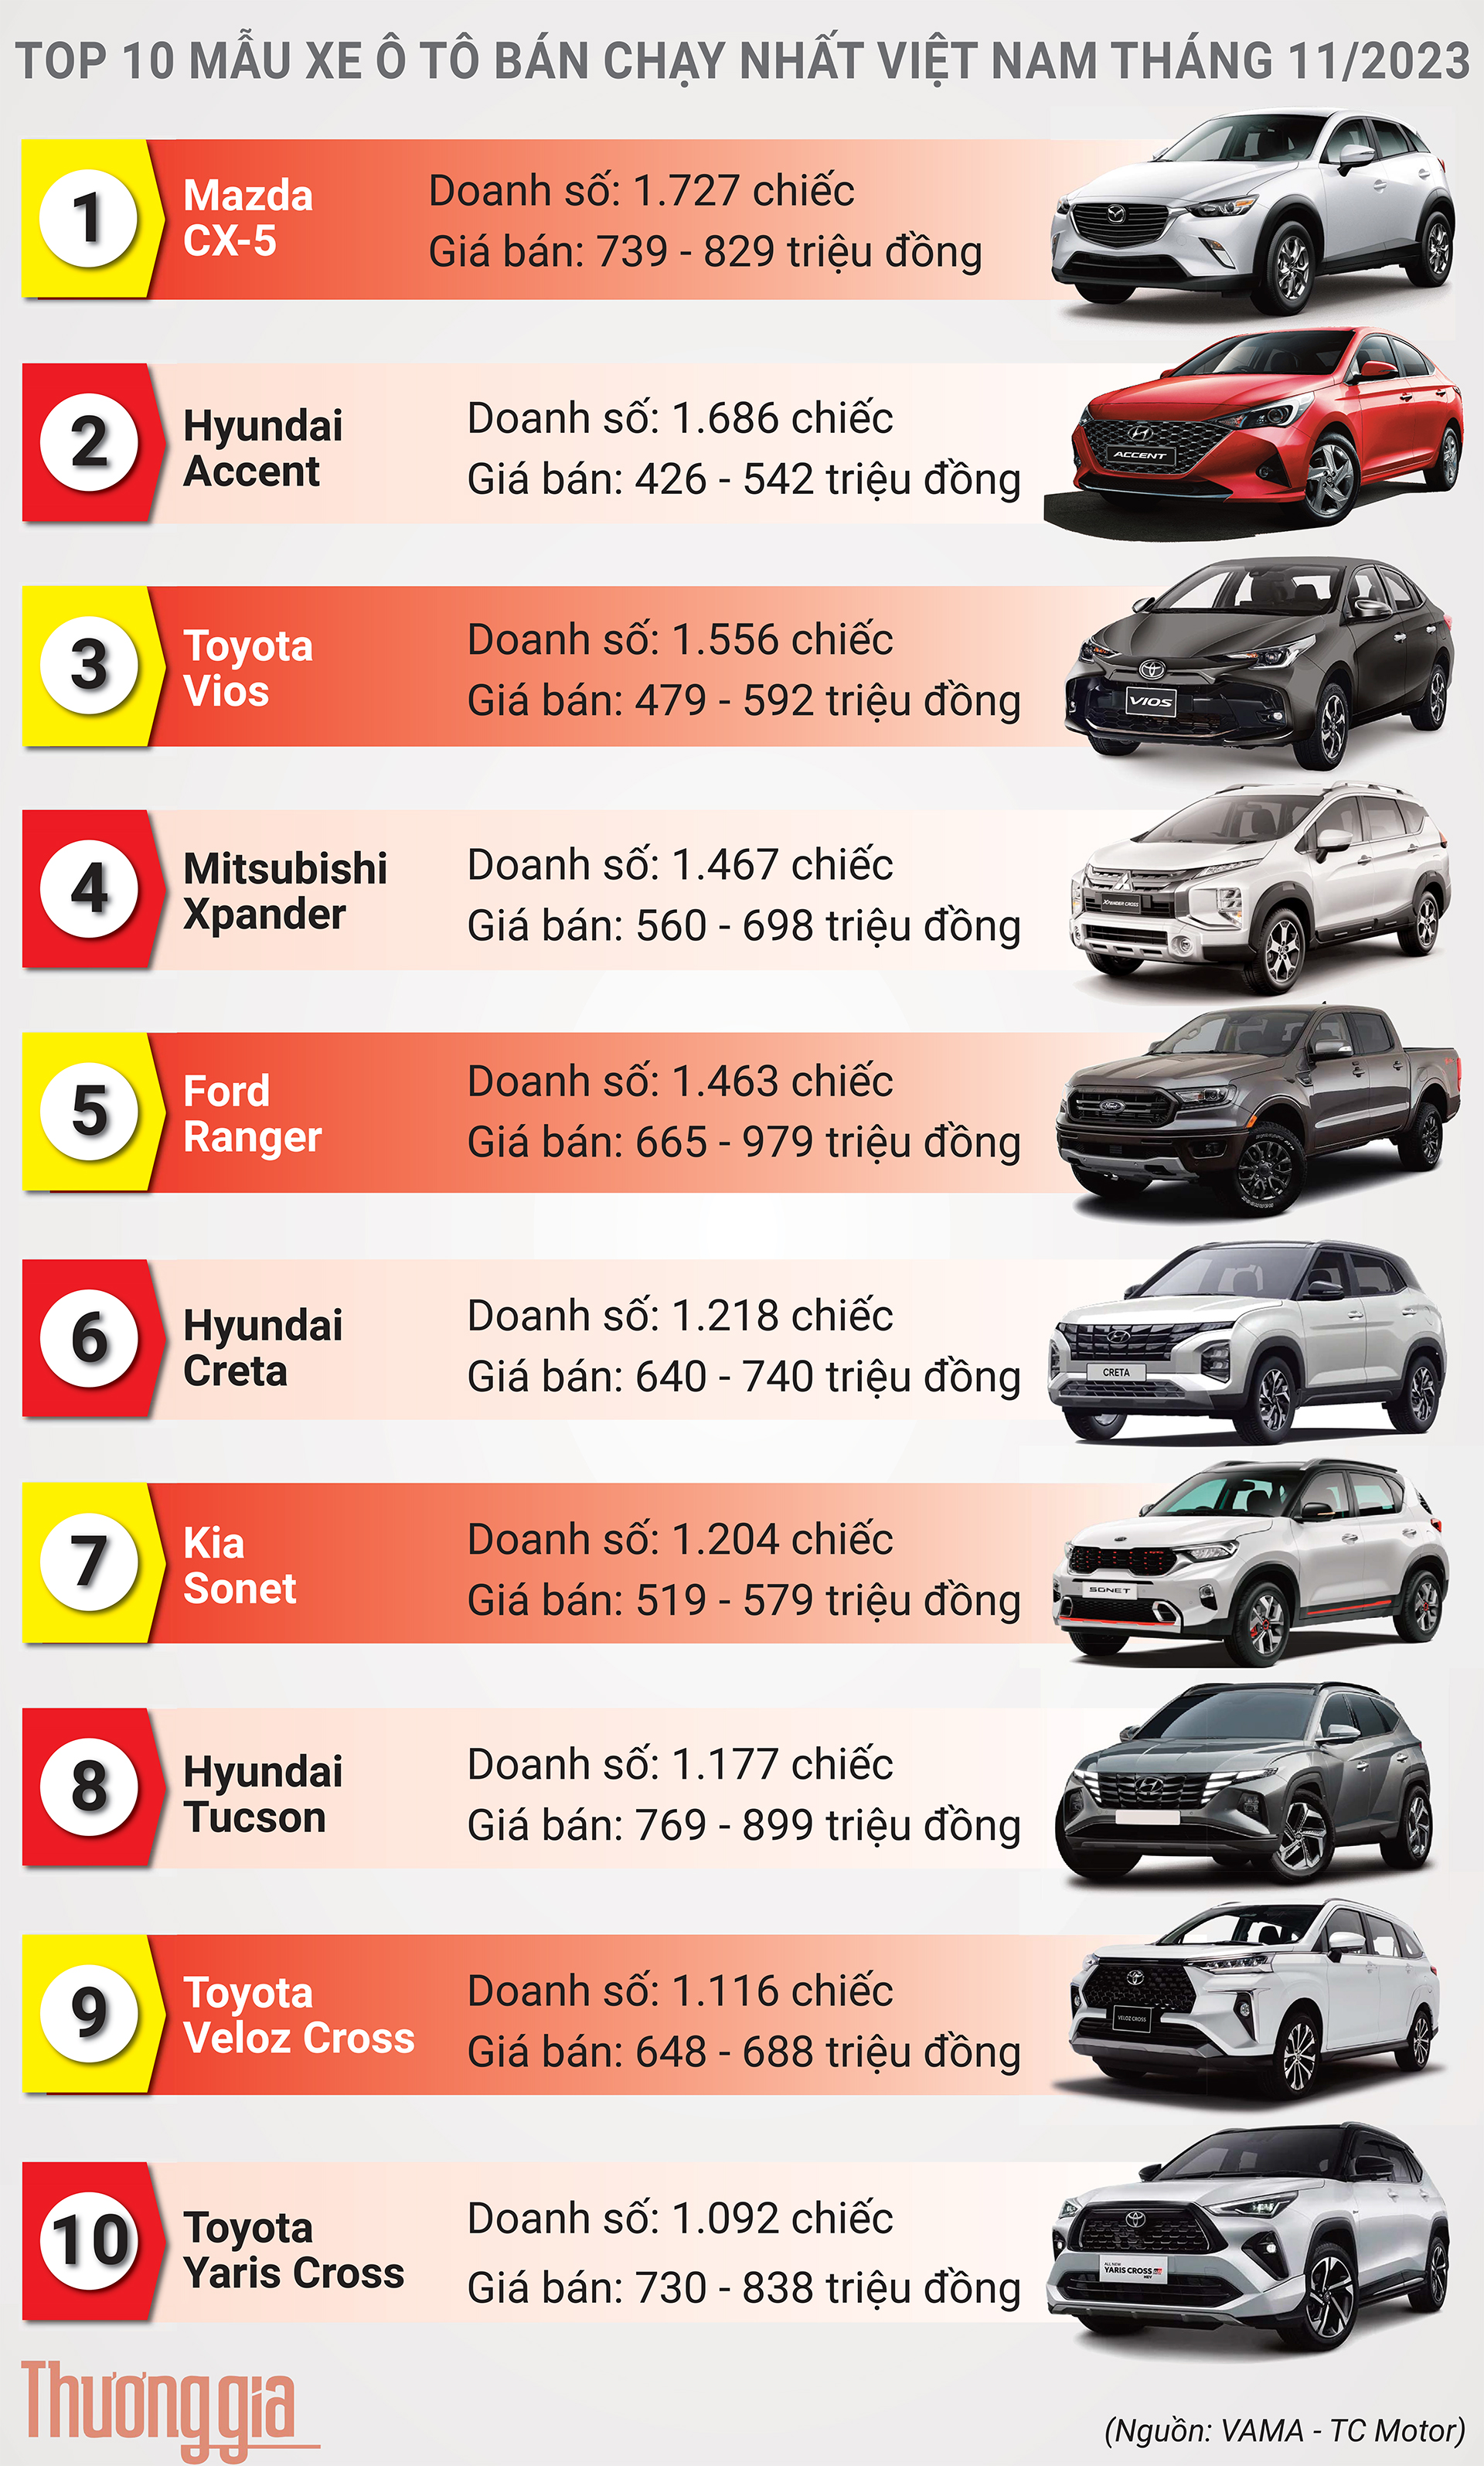 Top 10 mẫu xe ô tô bán chạy nhất Việt Nam tháng 11/2023: Không nhiều xáo trộn, Yaris Cross lần đầu góp mặt